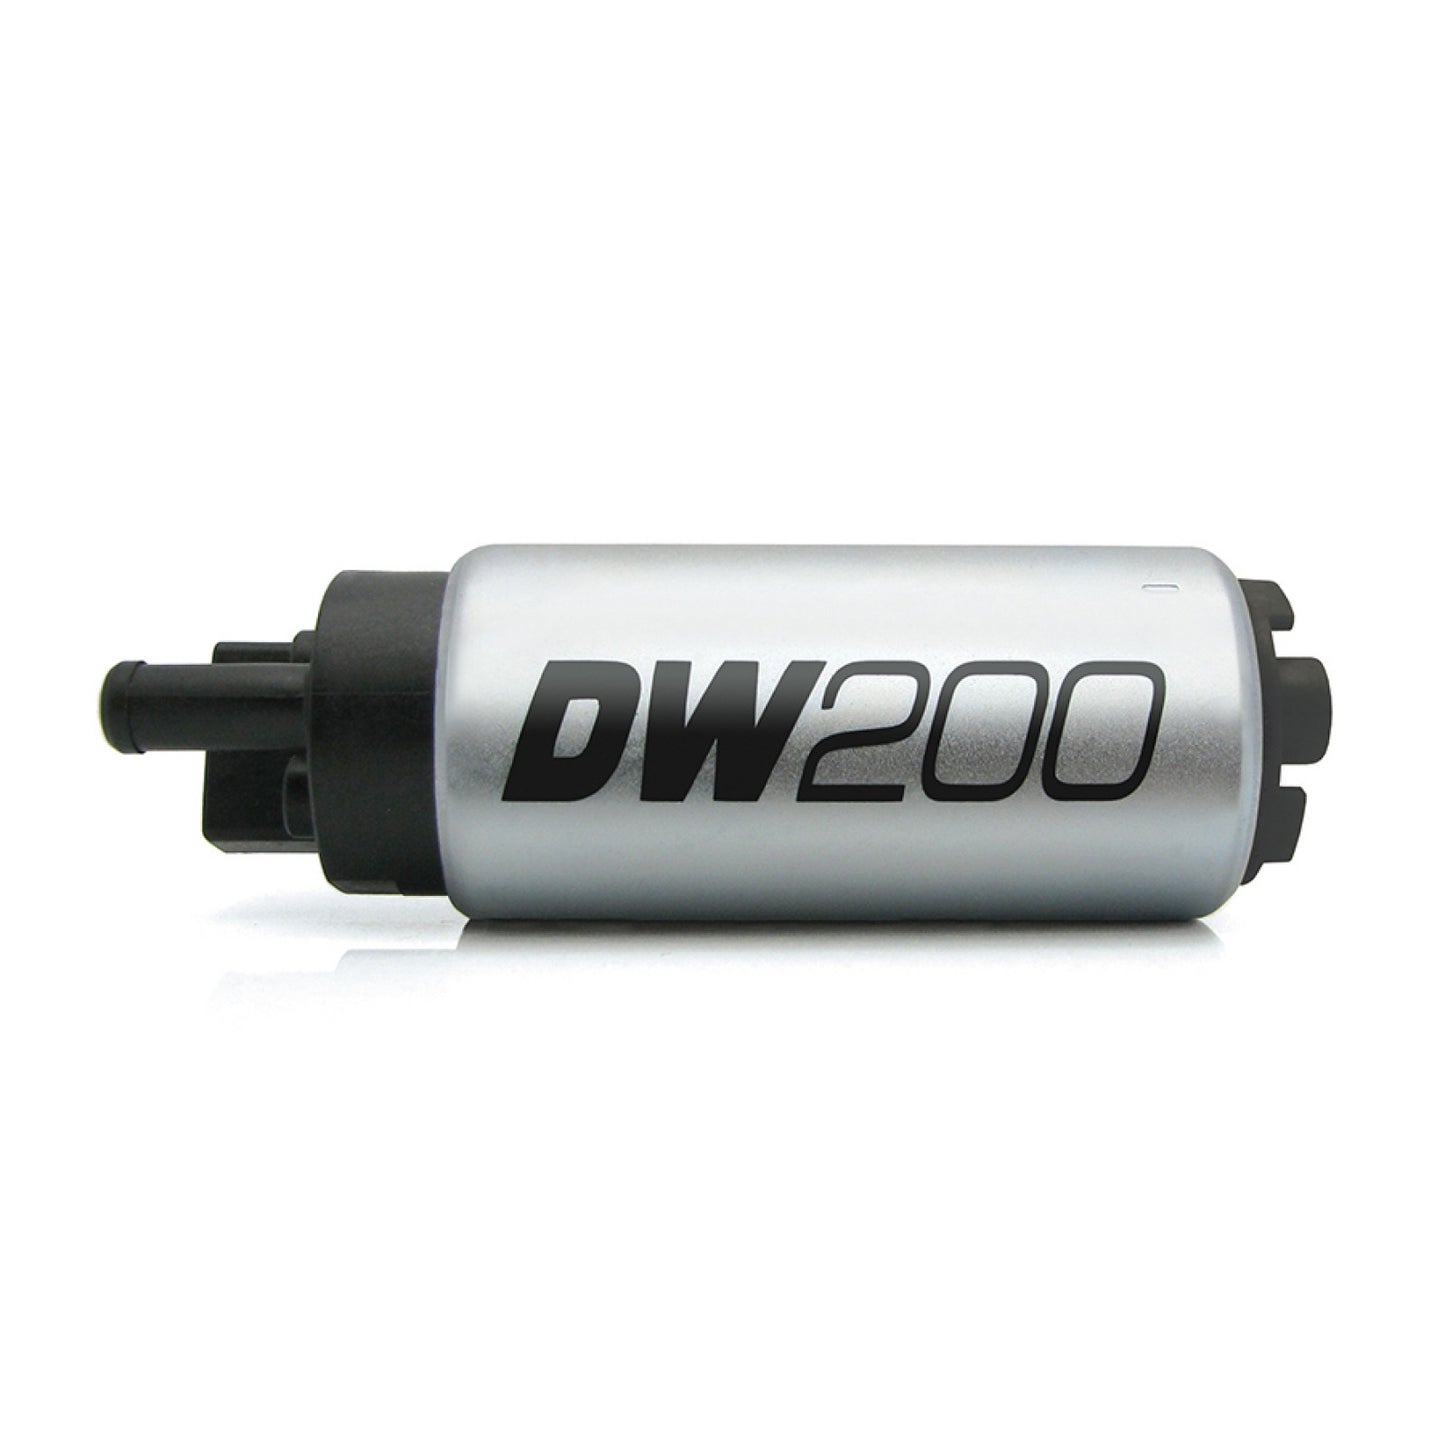 Deatschwerks DW250 255lph External Fuel Pump Universal fit